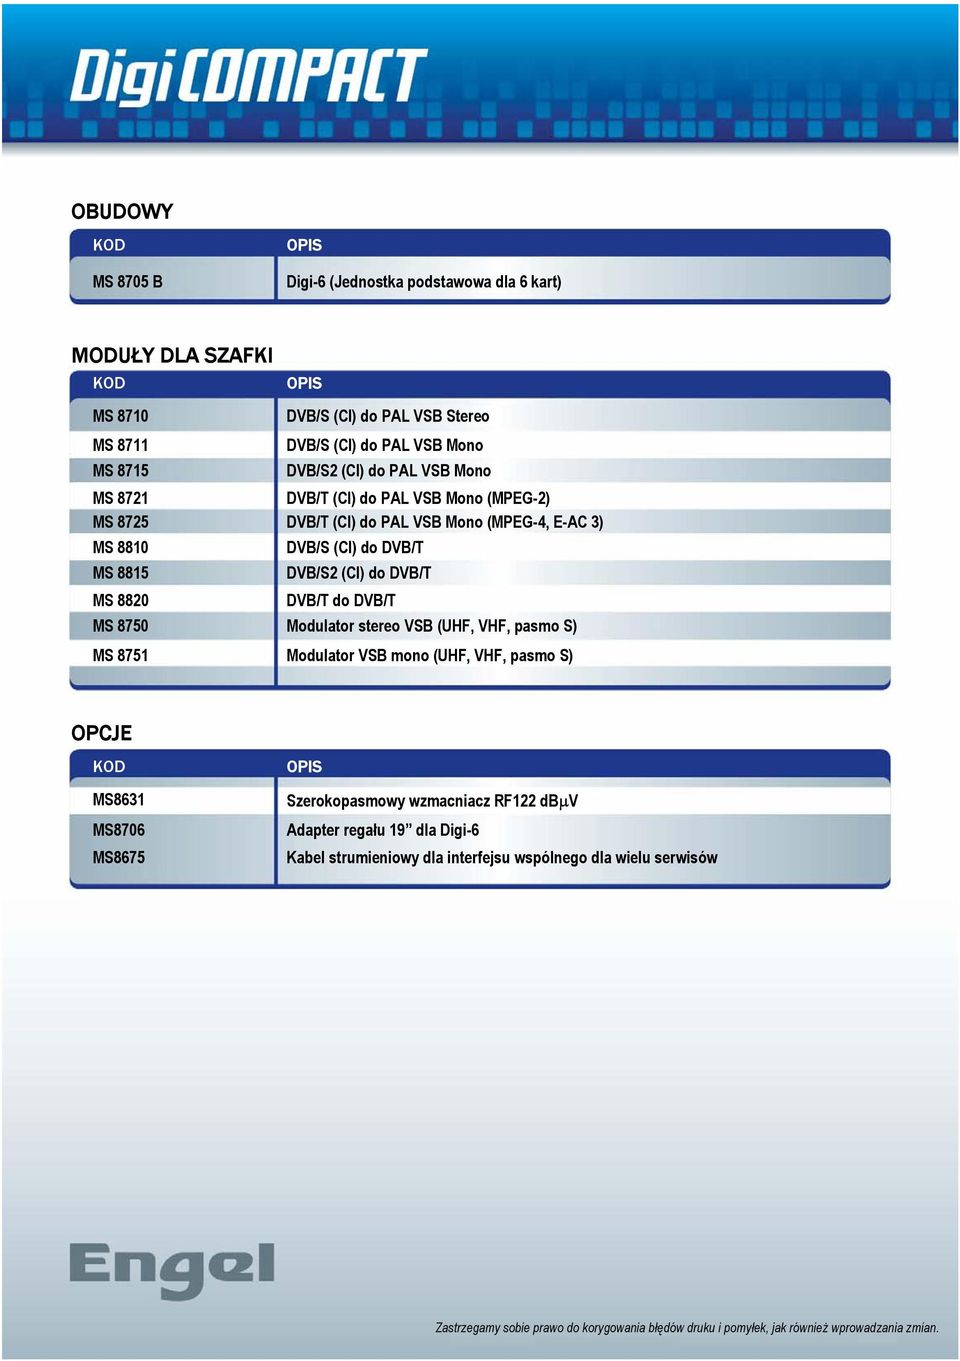 DVB/T do DVB/T MS 8750 Modulator stereo VSB (UHF, VHF, pasmo S) MS 8751 Modulator VSB mono (UHF, VHF, pasmo S) OPCJE MS8631 MS8706 MS8675 OPIS Szerokopasmowy wzmacniacz RF122 dbµv